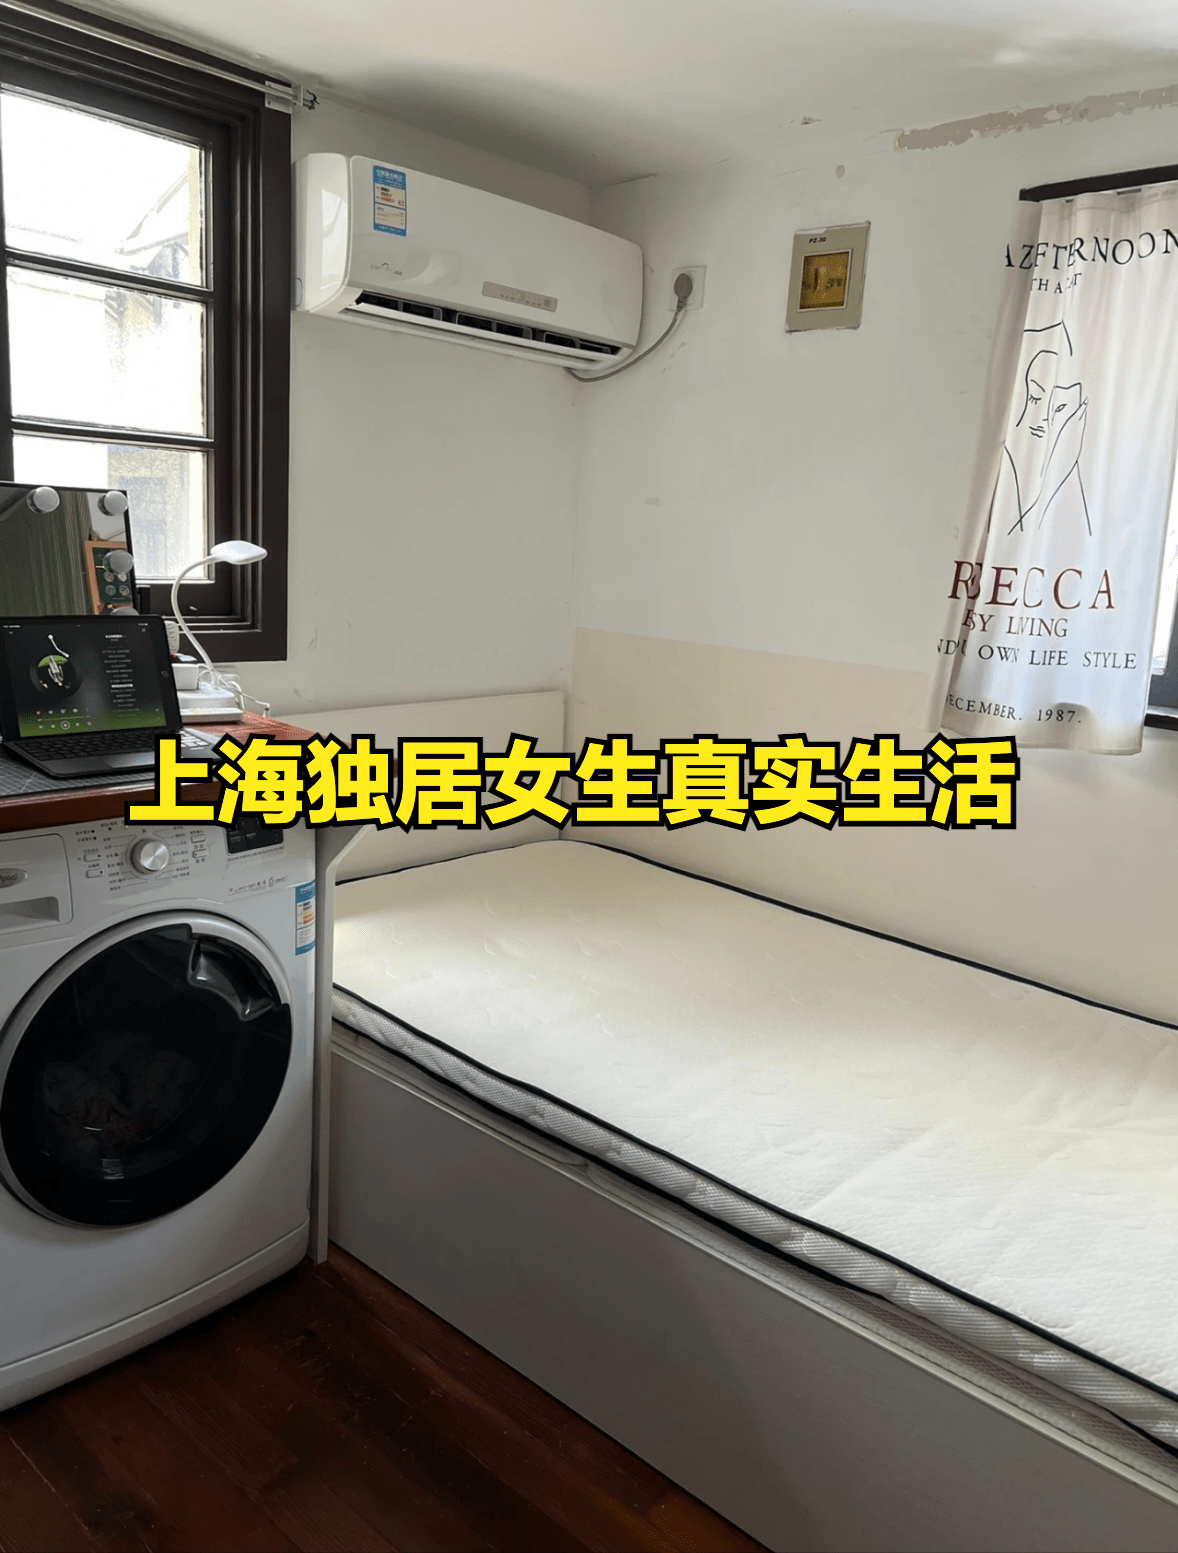 Bên trong căn hộ 8m2 ở Thượng Hải của cô gái độc thân: không gian siêu chật chội, chỉ nhìn cũng thấy bí bách - Ảnh 1.